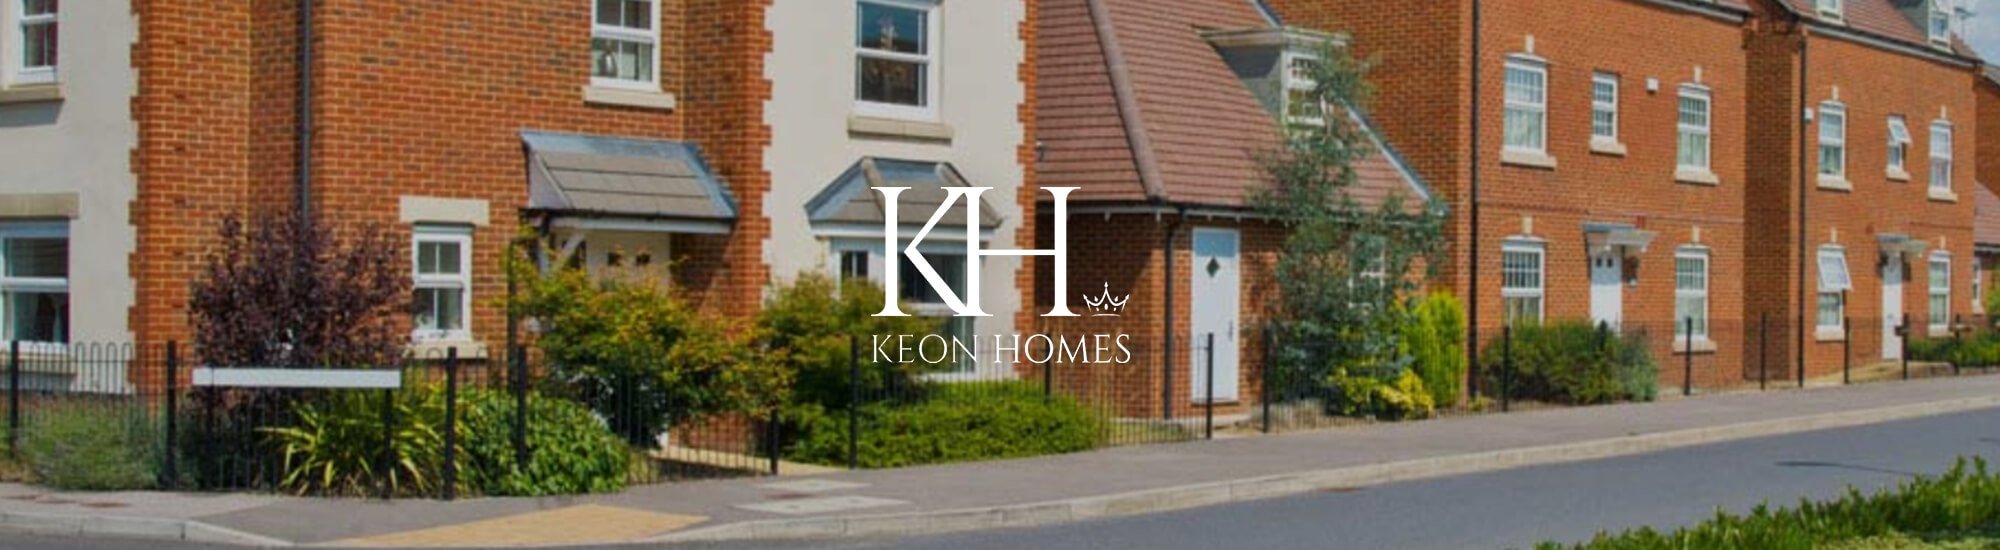 Keon Homes  Banner.